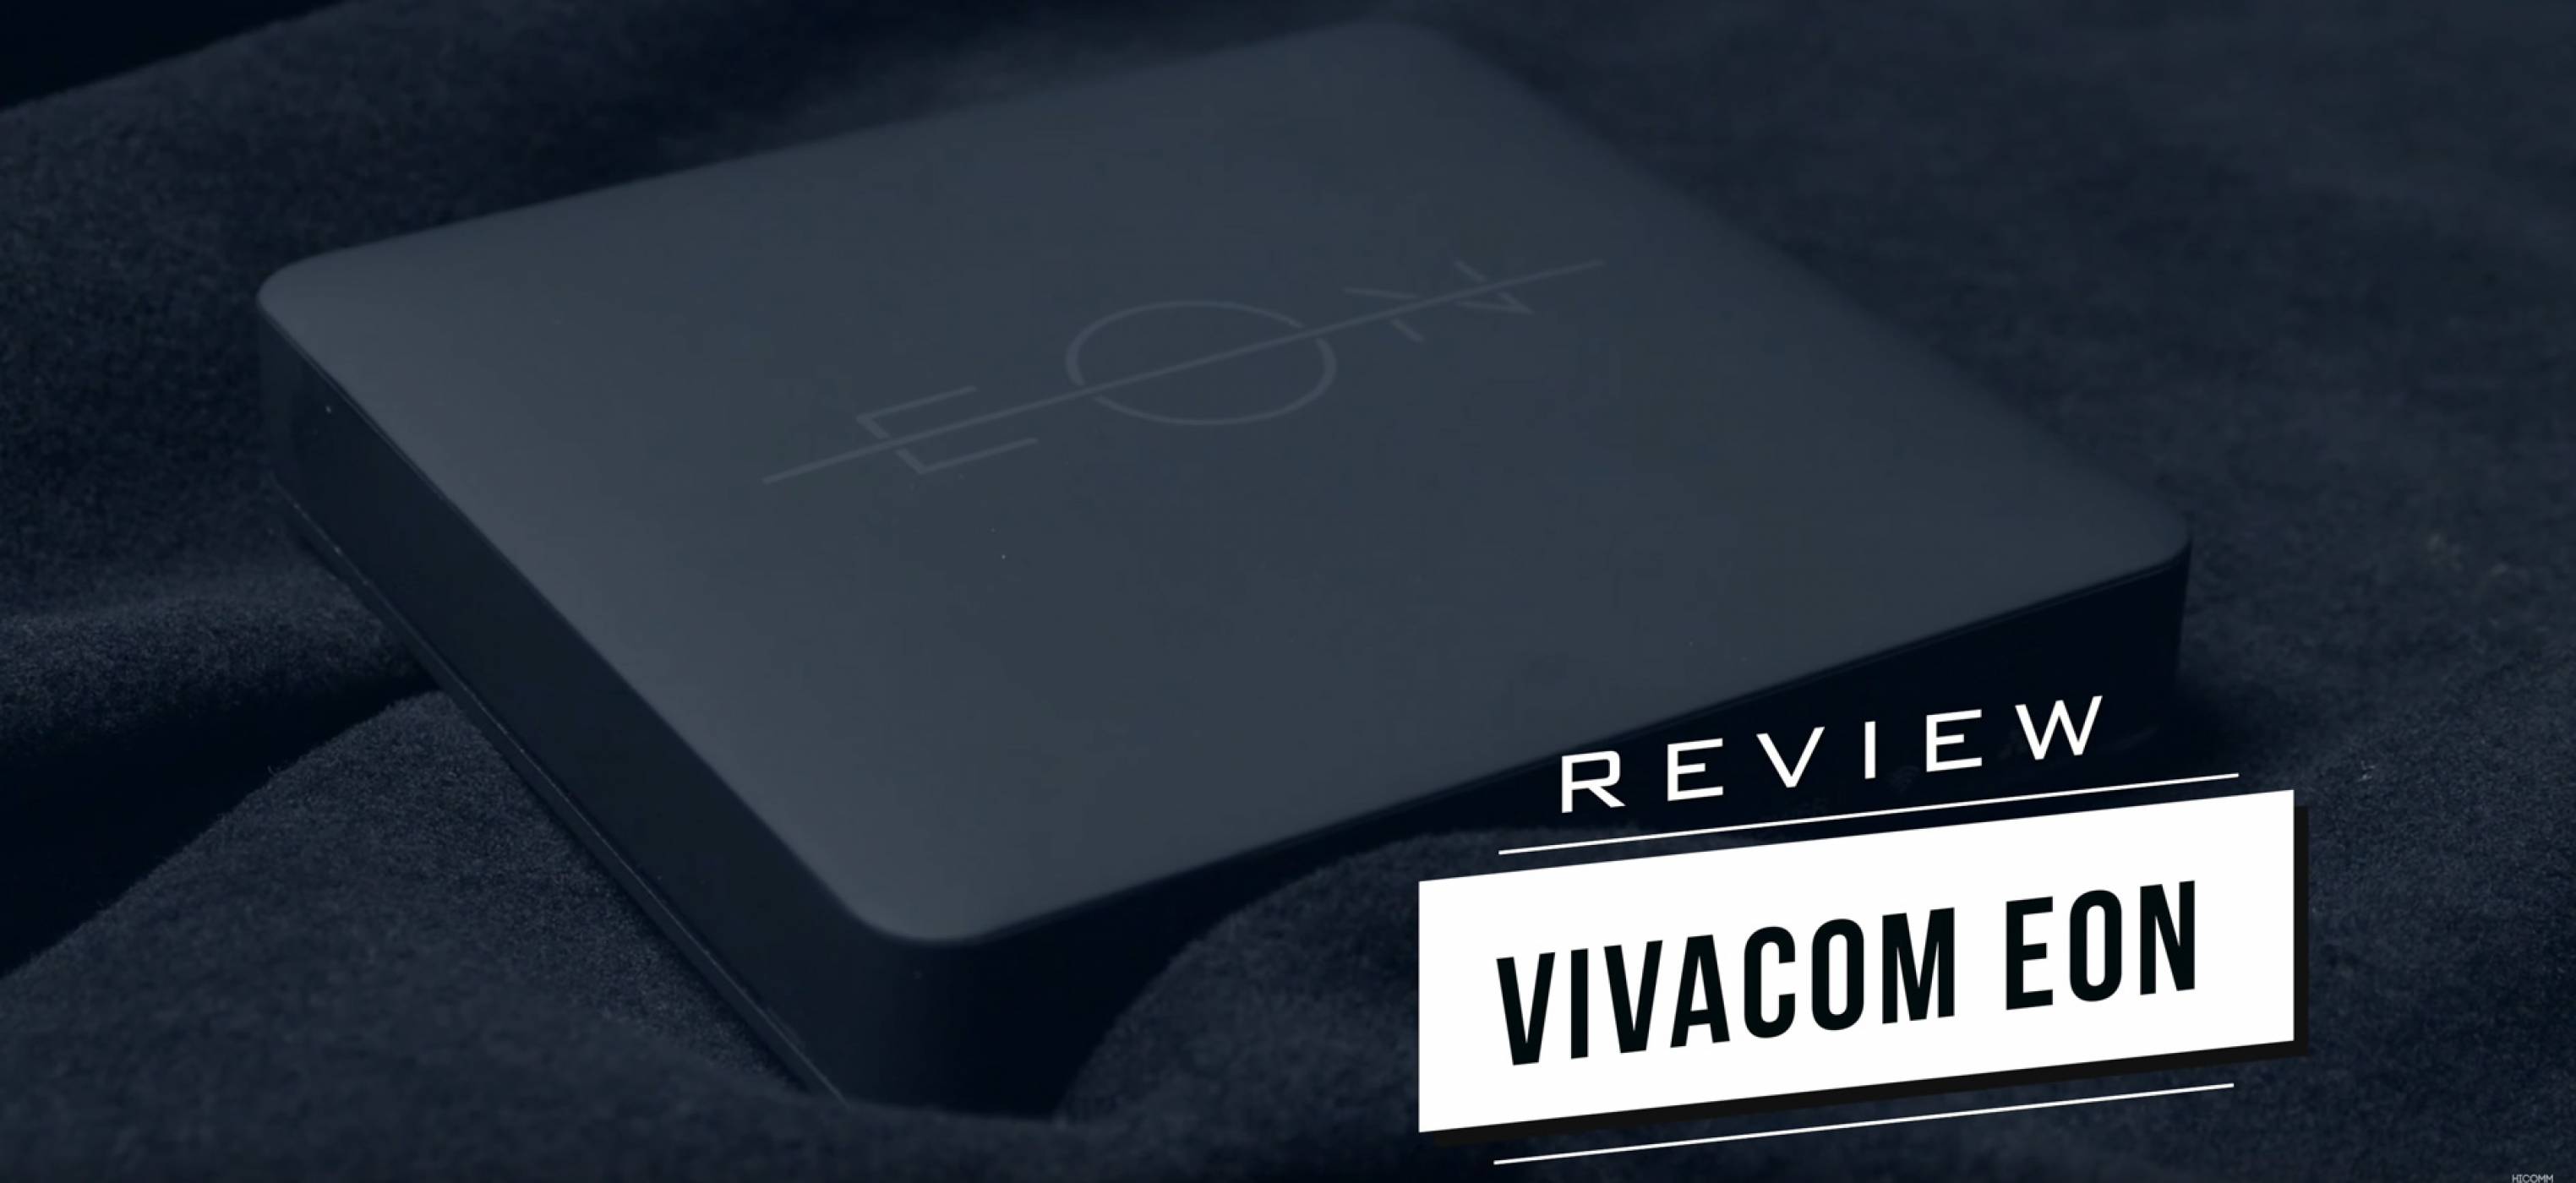 EON: дигиталната платформа на Vivacom е бъдещето на телевизията и интернета (ВИДЕО РЕВЮ)